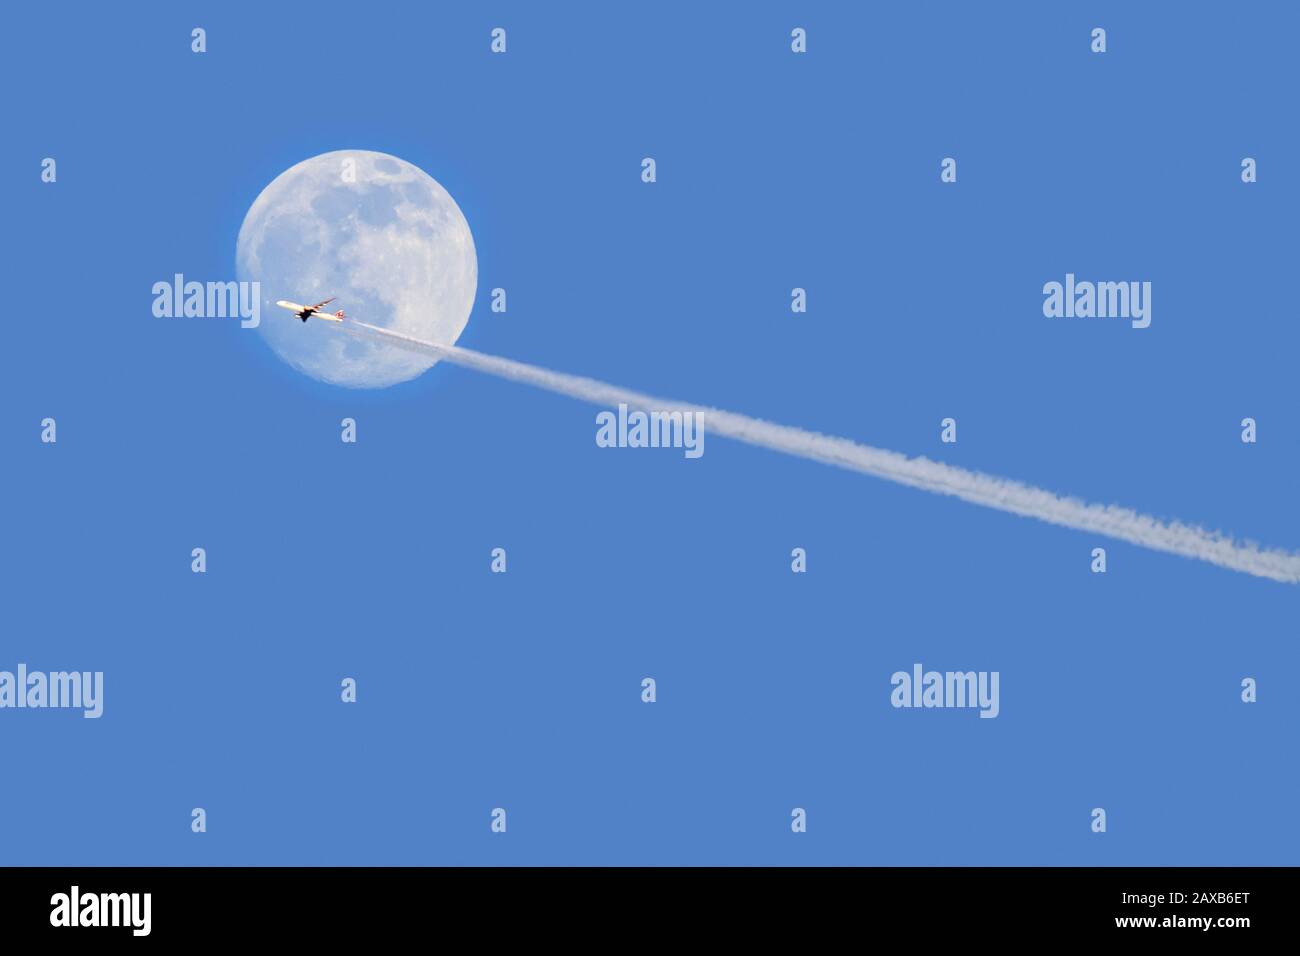 Avión comercial de pasajeros / avión de pasajeros volando frente a la luna llena al anochecer mostrando contraindicaciones / senderos de condensación Foto de stock